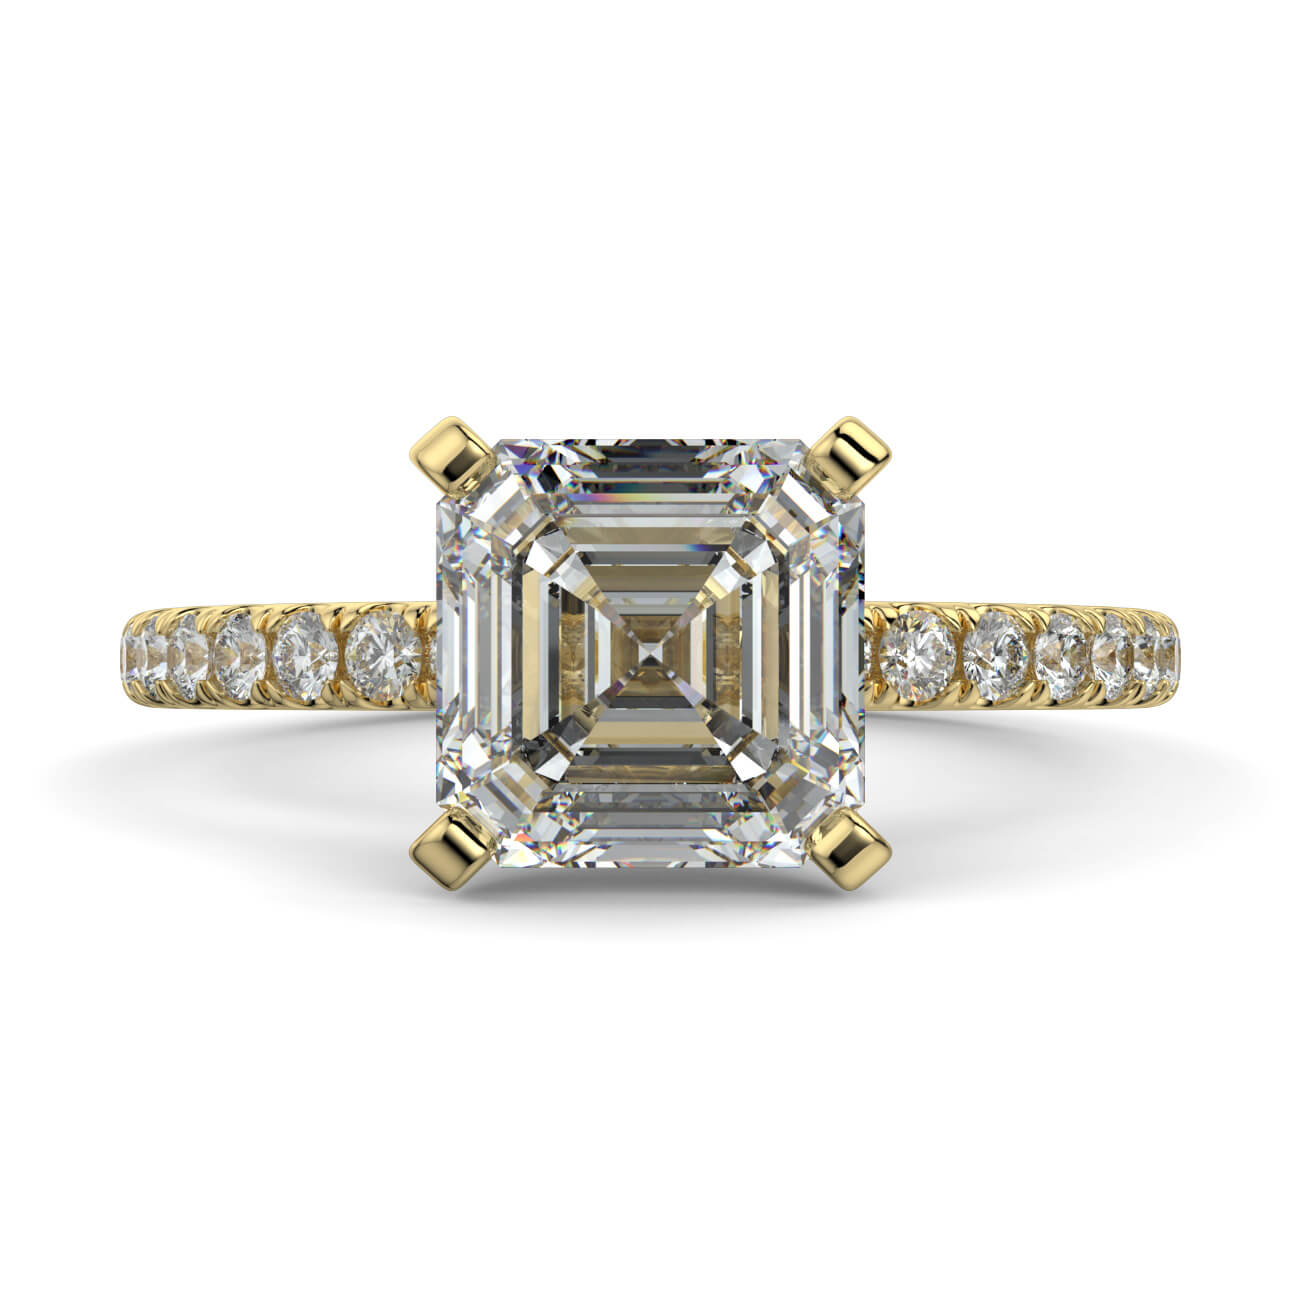 Delicate ‘Liat’ Asscher Cut Diamond Engagement Ring in 18k Yellow Gold – Australian Diamond Network